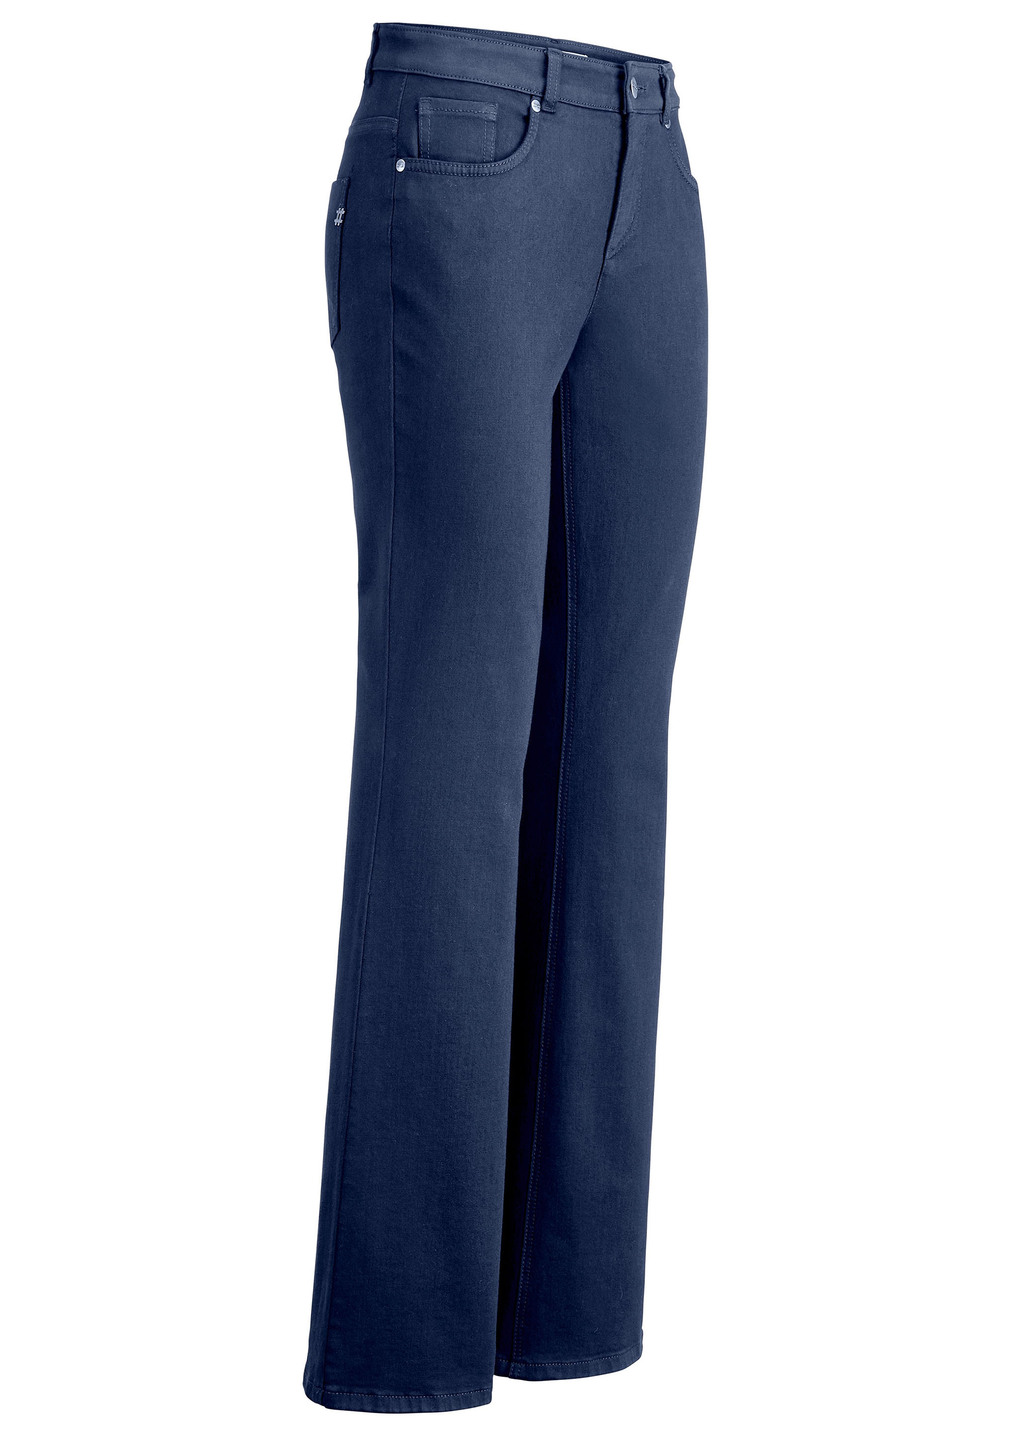 Magic-Jeans mit modisch weiterem Beinverlauf, Jeansblau, Größe 84 von ASCARI